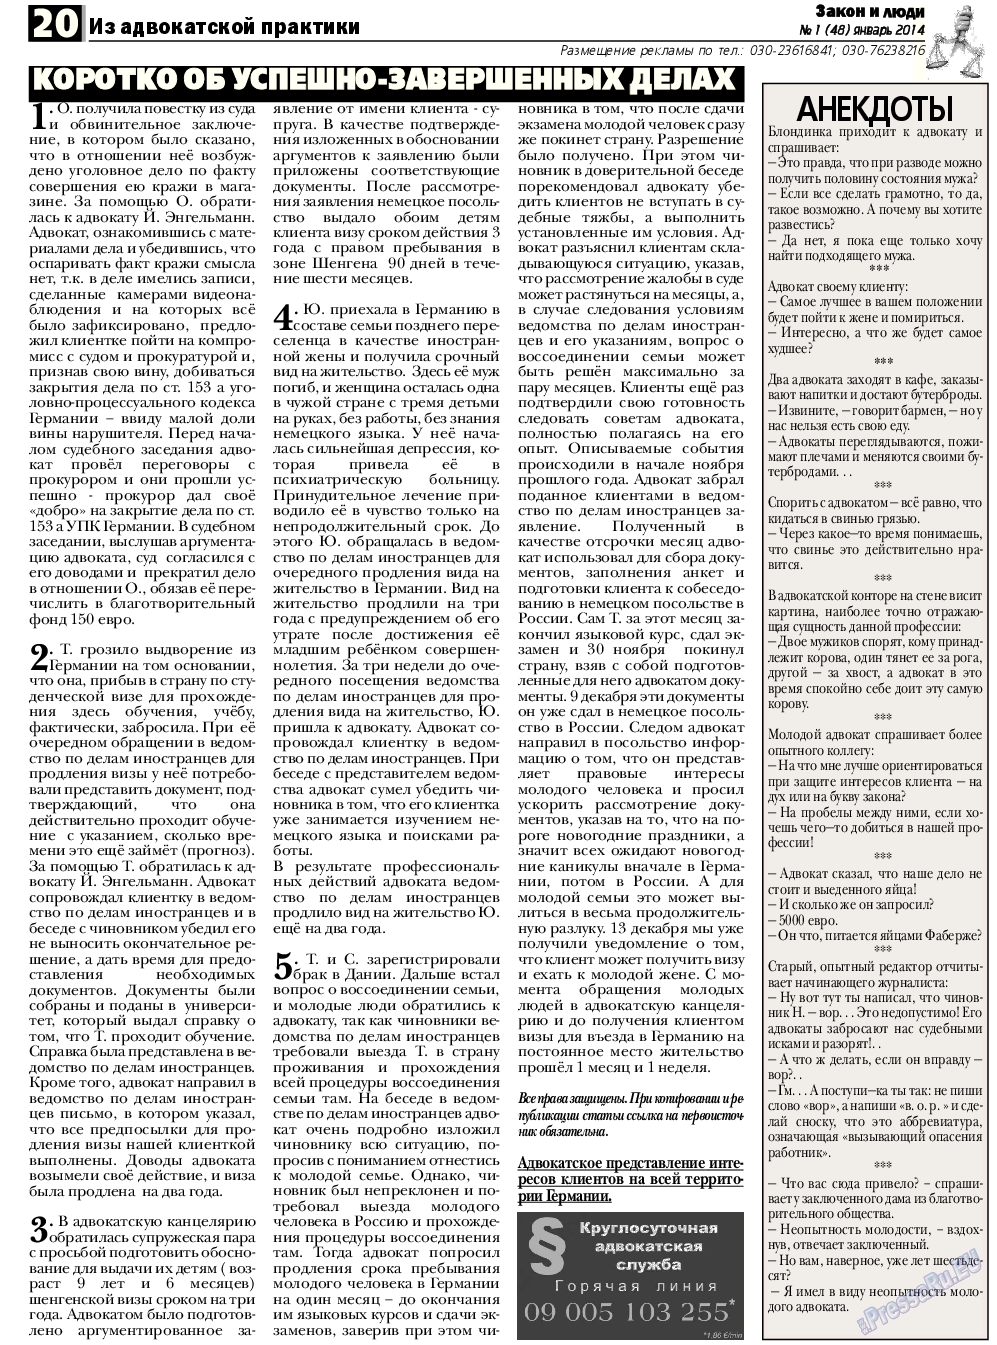 Закон и люди, газета. 2014 №1 стр.20